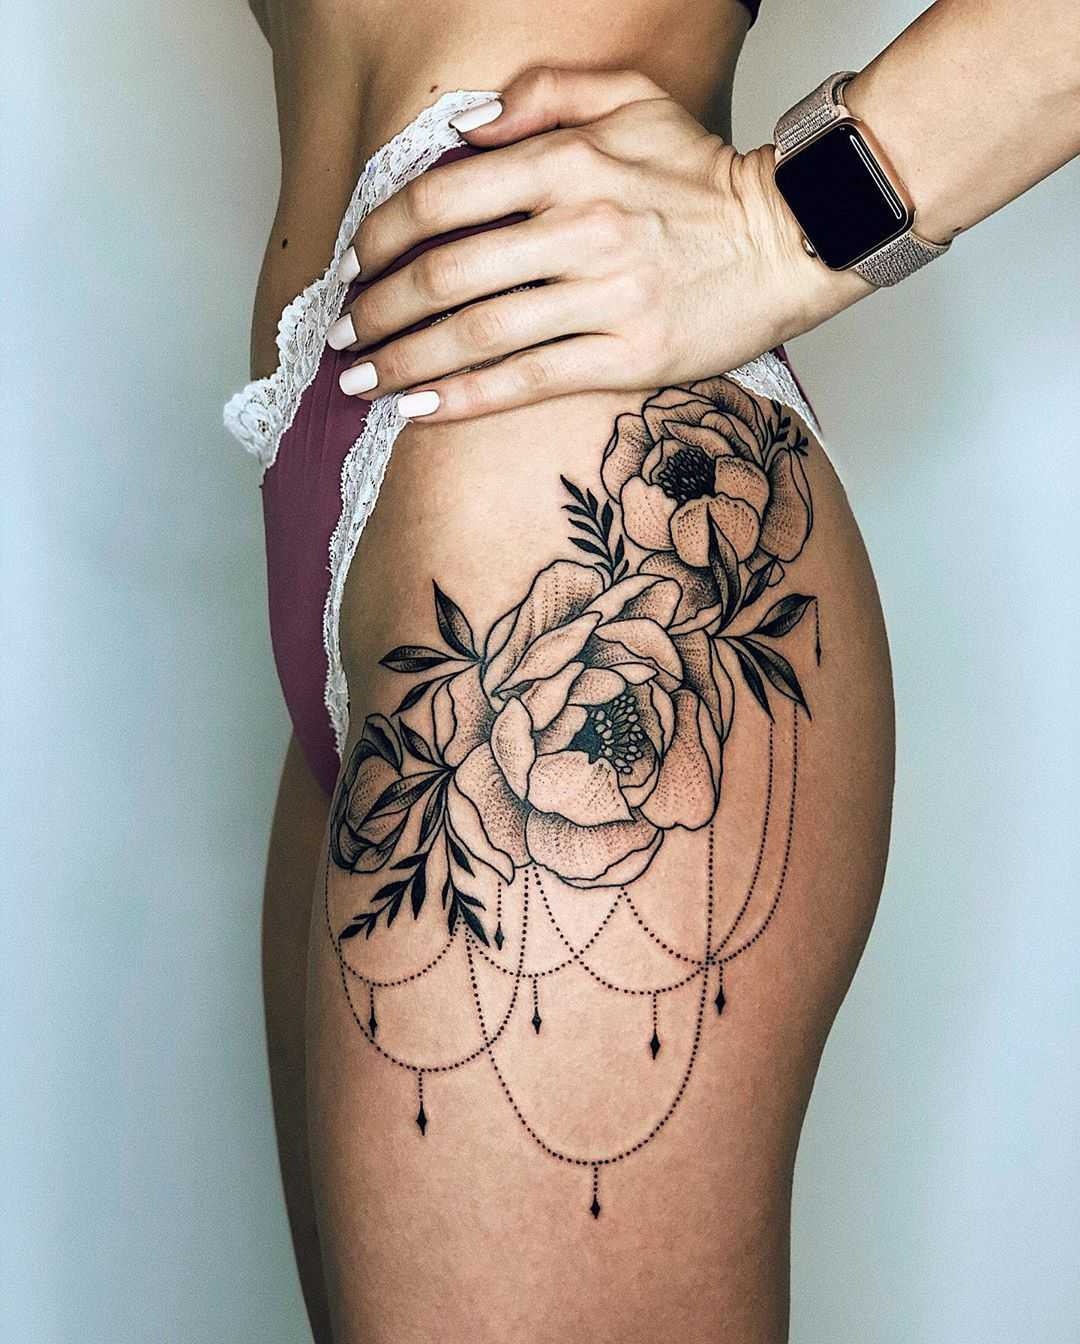 Татуировки для девушек на ноге: топ 100 идей со значением и фото